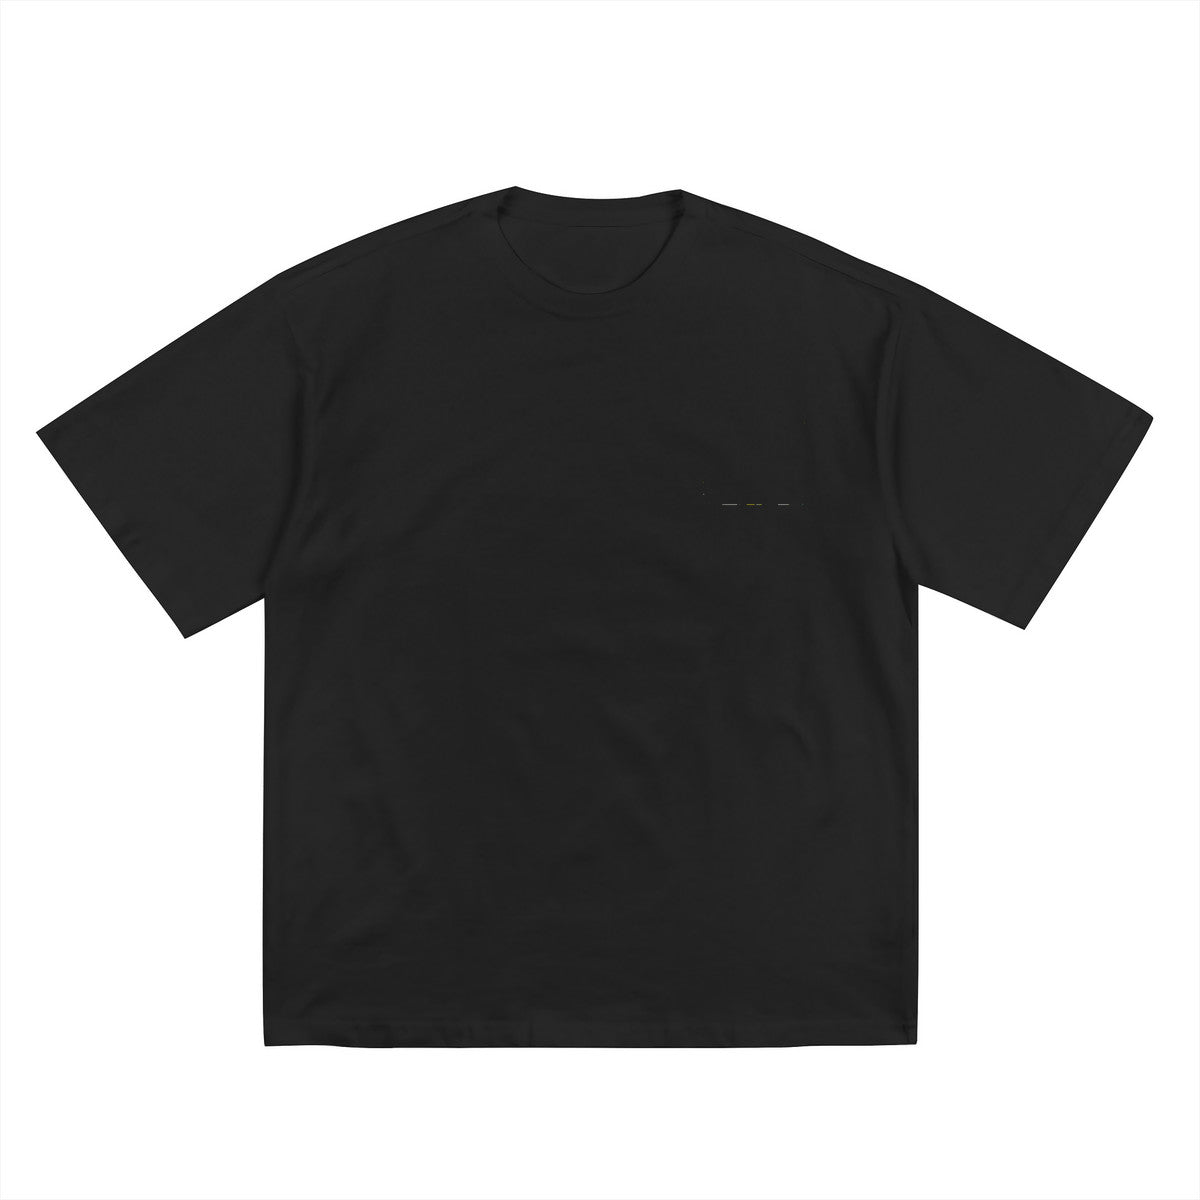 Copy of Copy of Men's Premium Thick Cotton T-Shirt